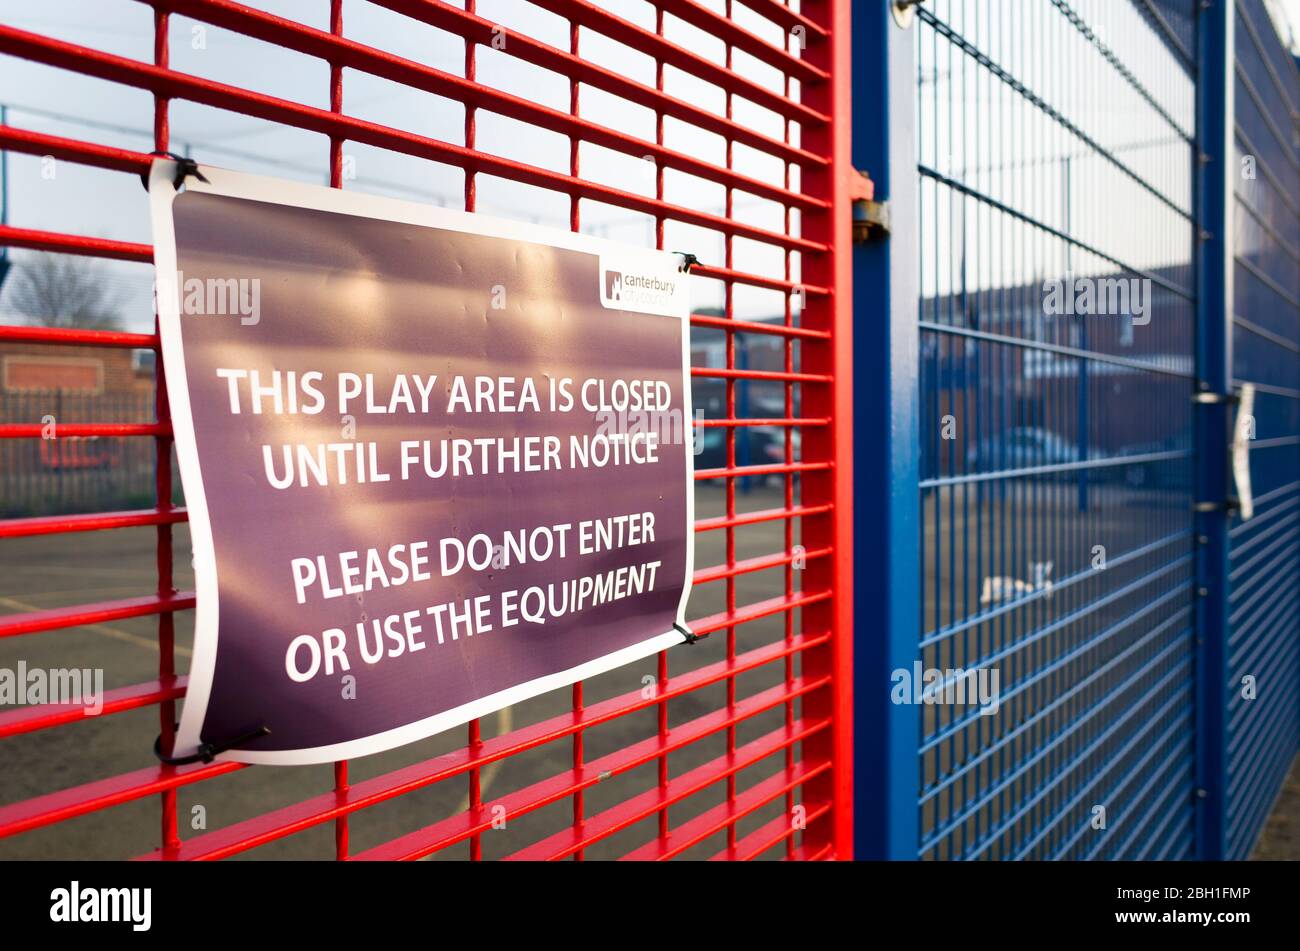 Canterbury stadtrat Schließung Hinweis auf Spielplatz Zaun während 2020 Sperrung angezeigt, Kent Vereinigtes Königreich England. Stockfoto